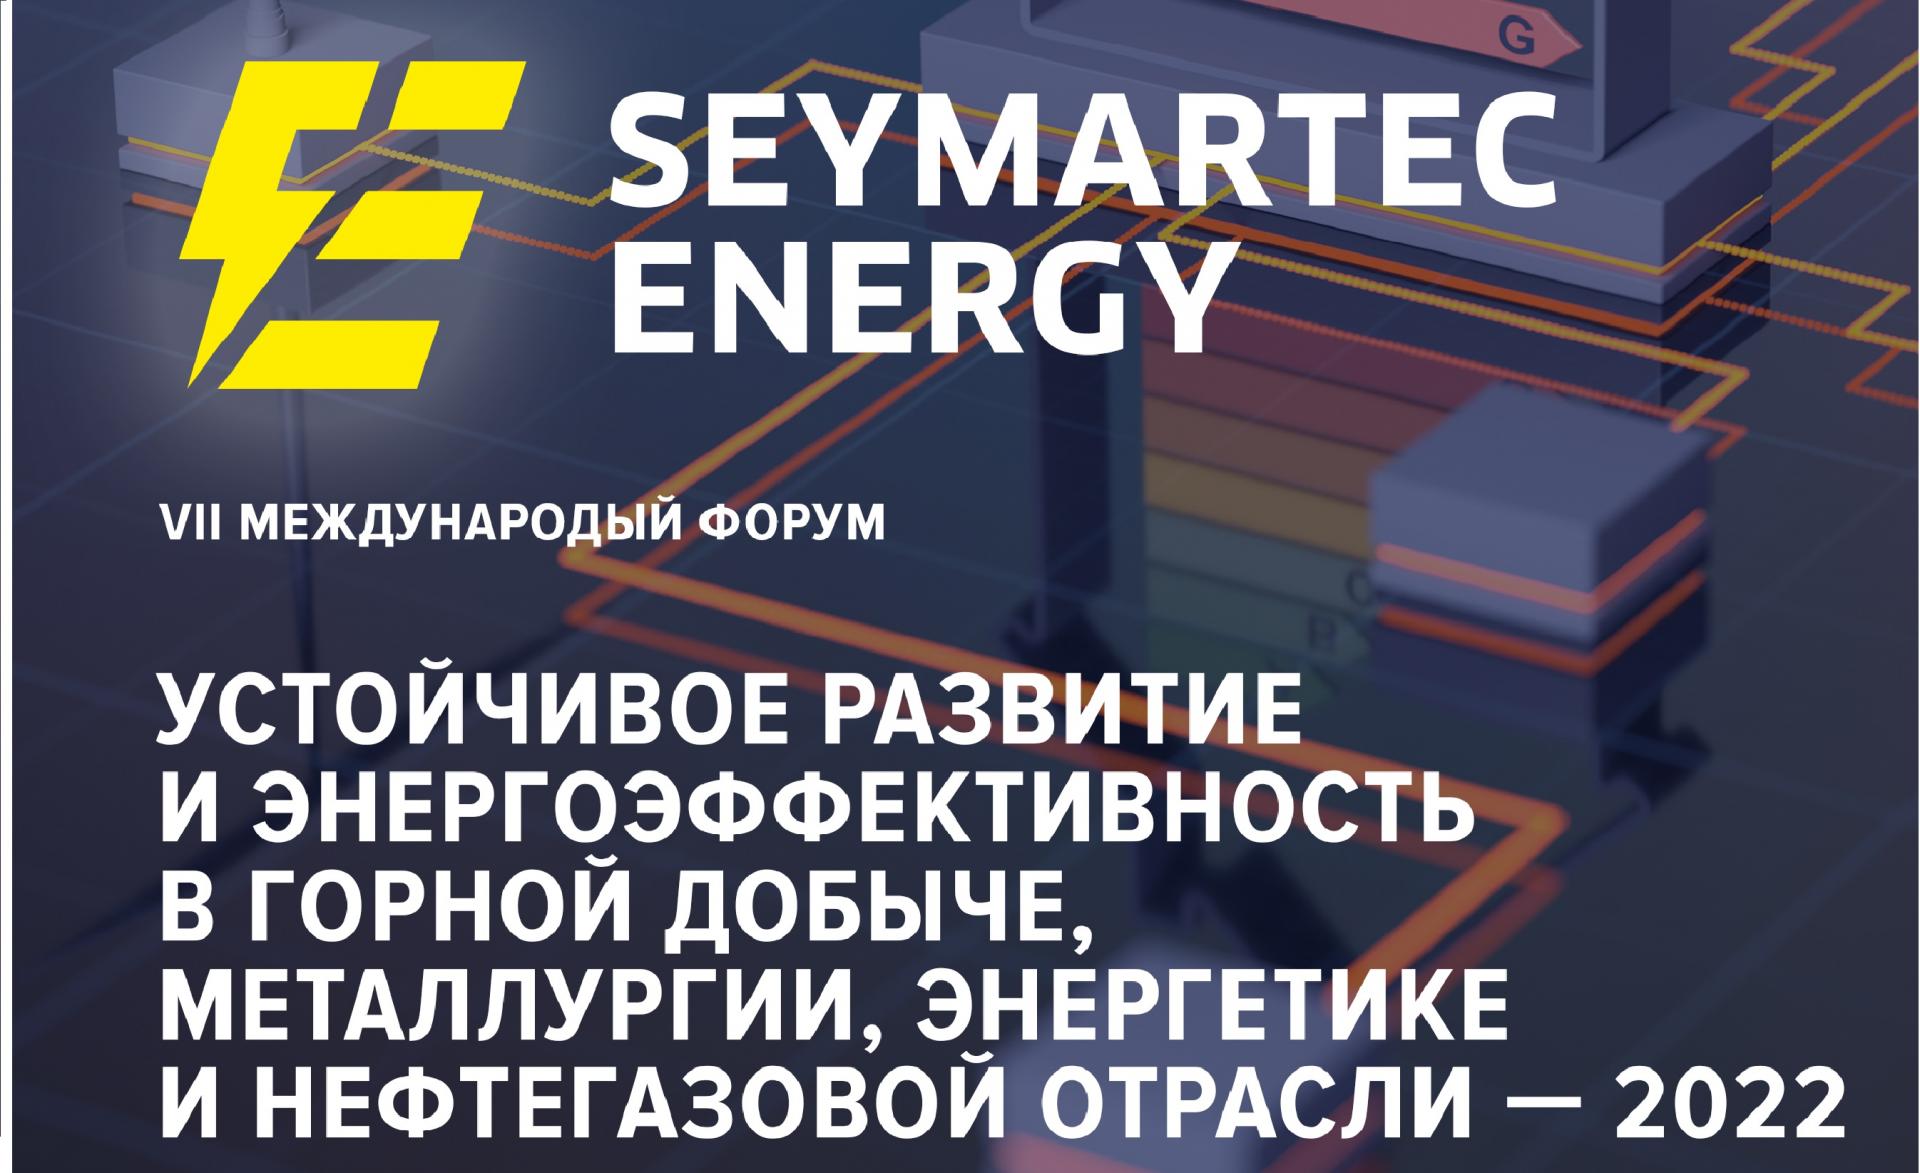 Seymartec energy. Устойчивое развитие и энергоэффективность в горной добыче, металлургии, энергетике и нефтегазовой отрасли — 2022
